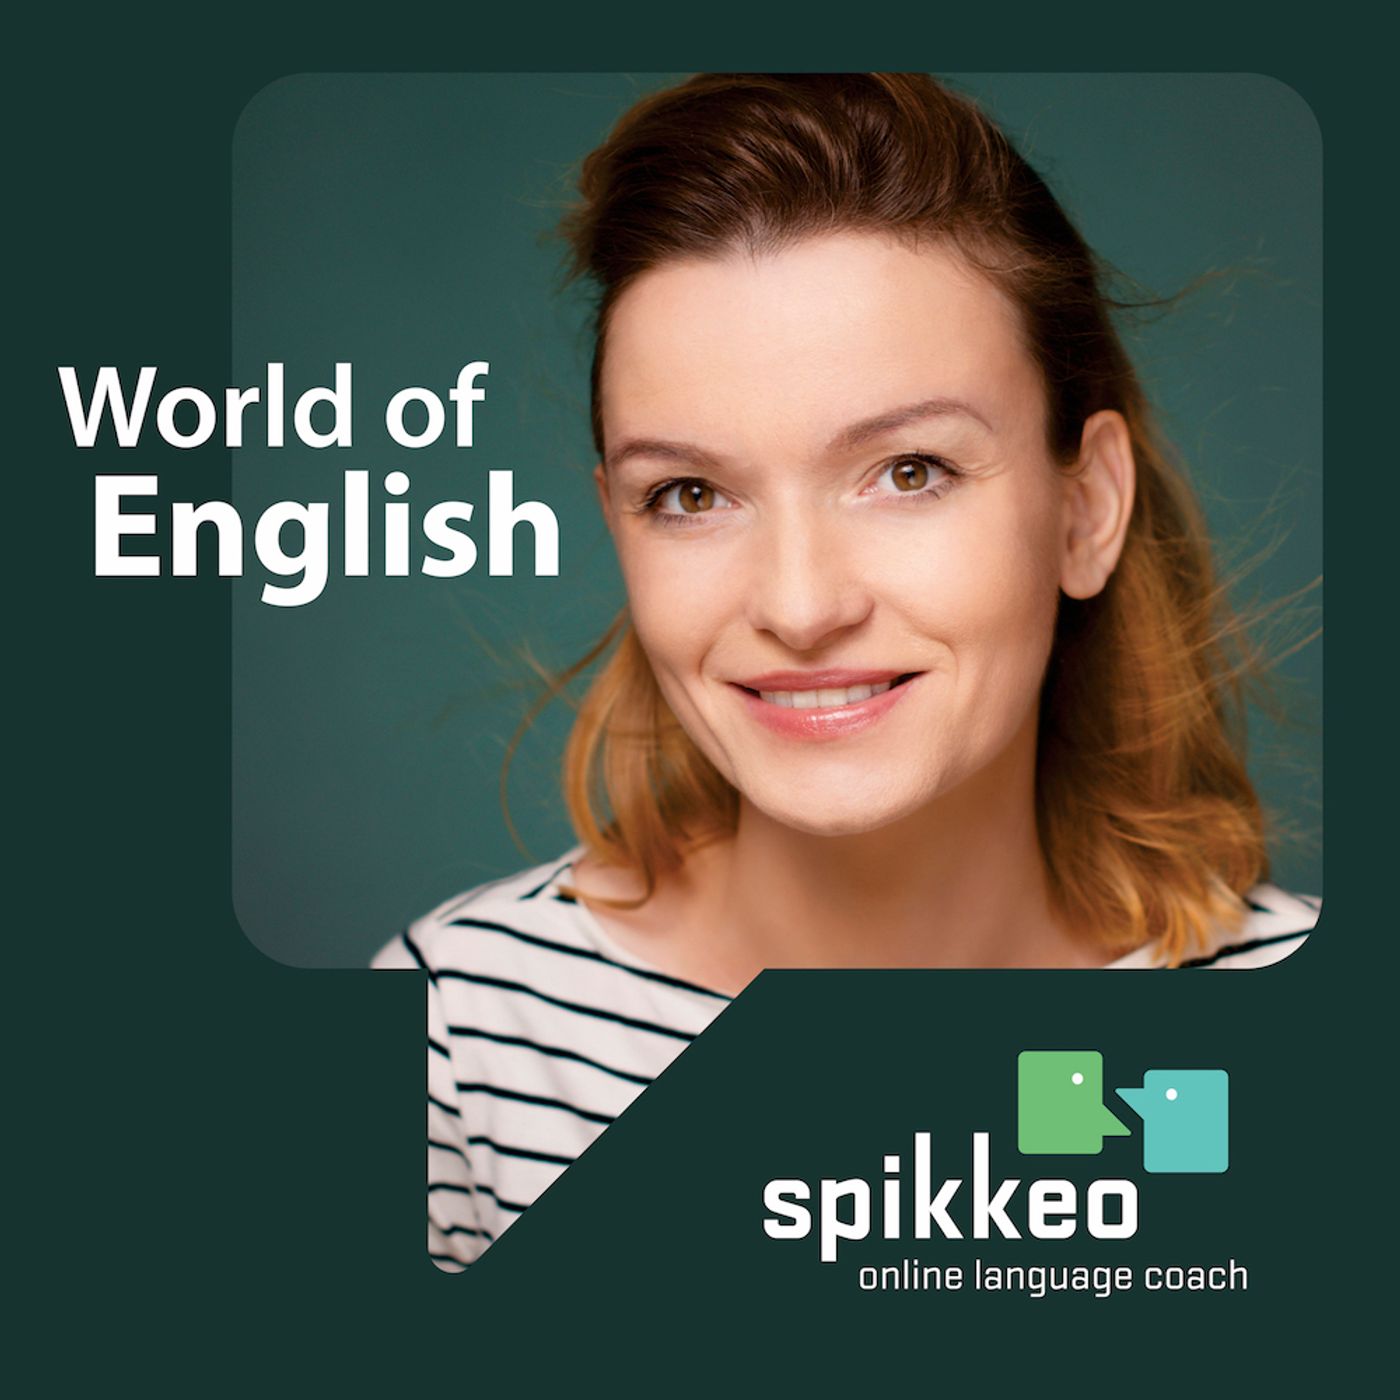 Слушать подкасты на английском. Подкаст на английском. Podcast in English. Лучшие подкасты на английском. World speak English Podcast.